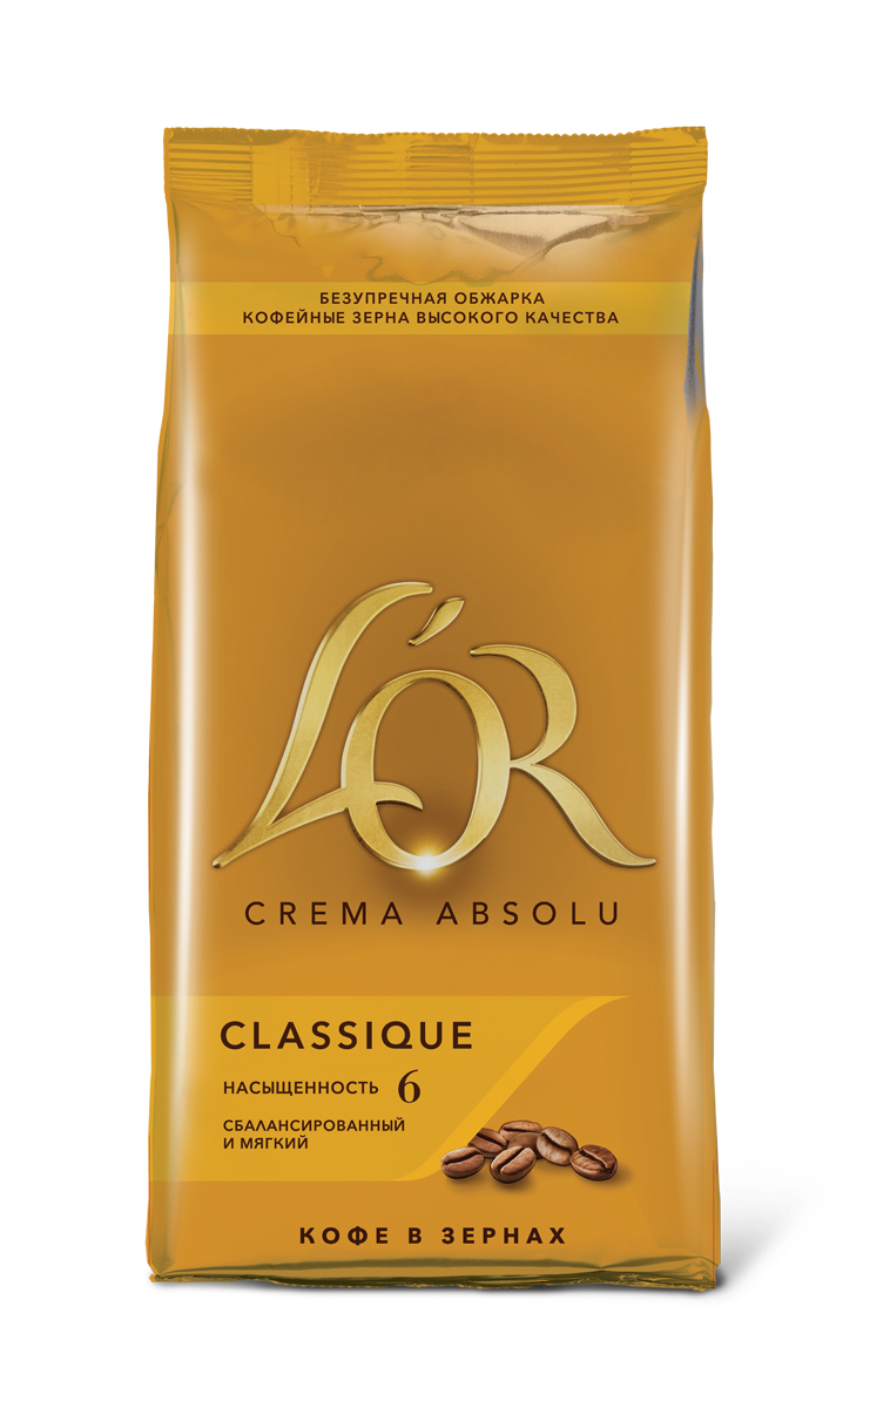 Картинка Кофе L'OR Crema Absolu Classique в зернах 1 кг